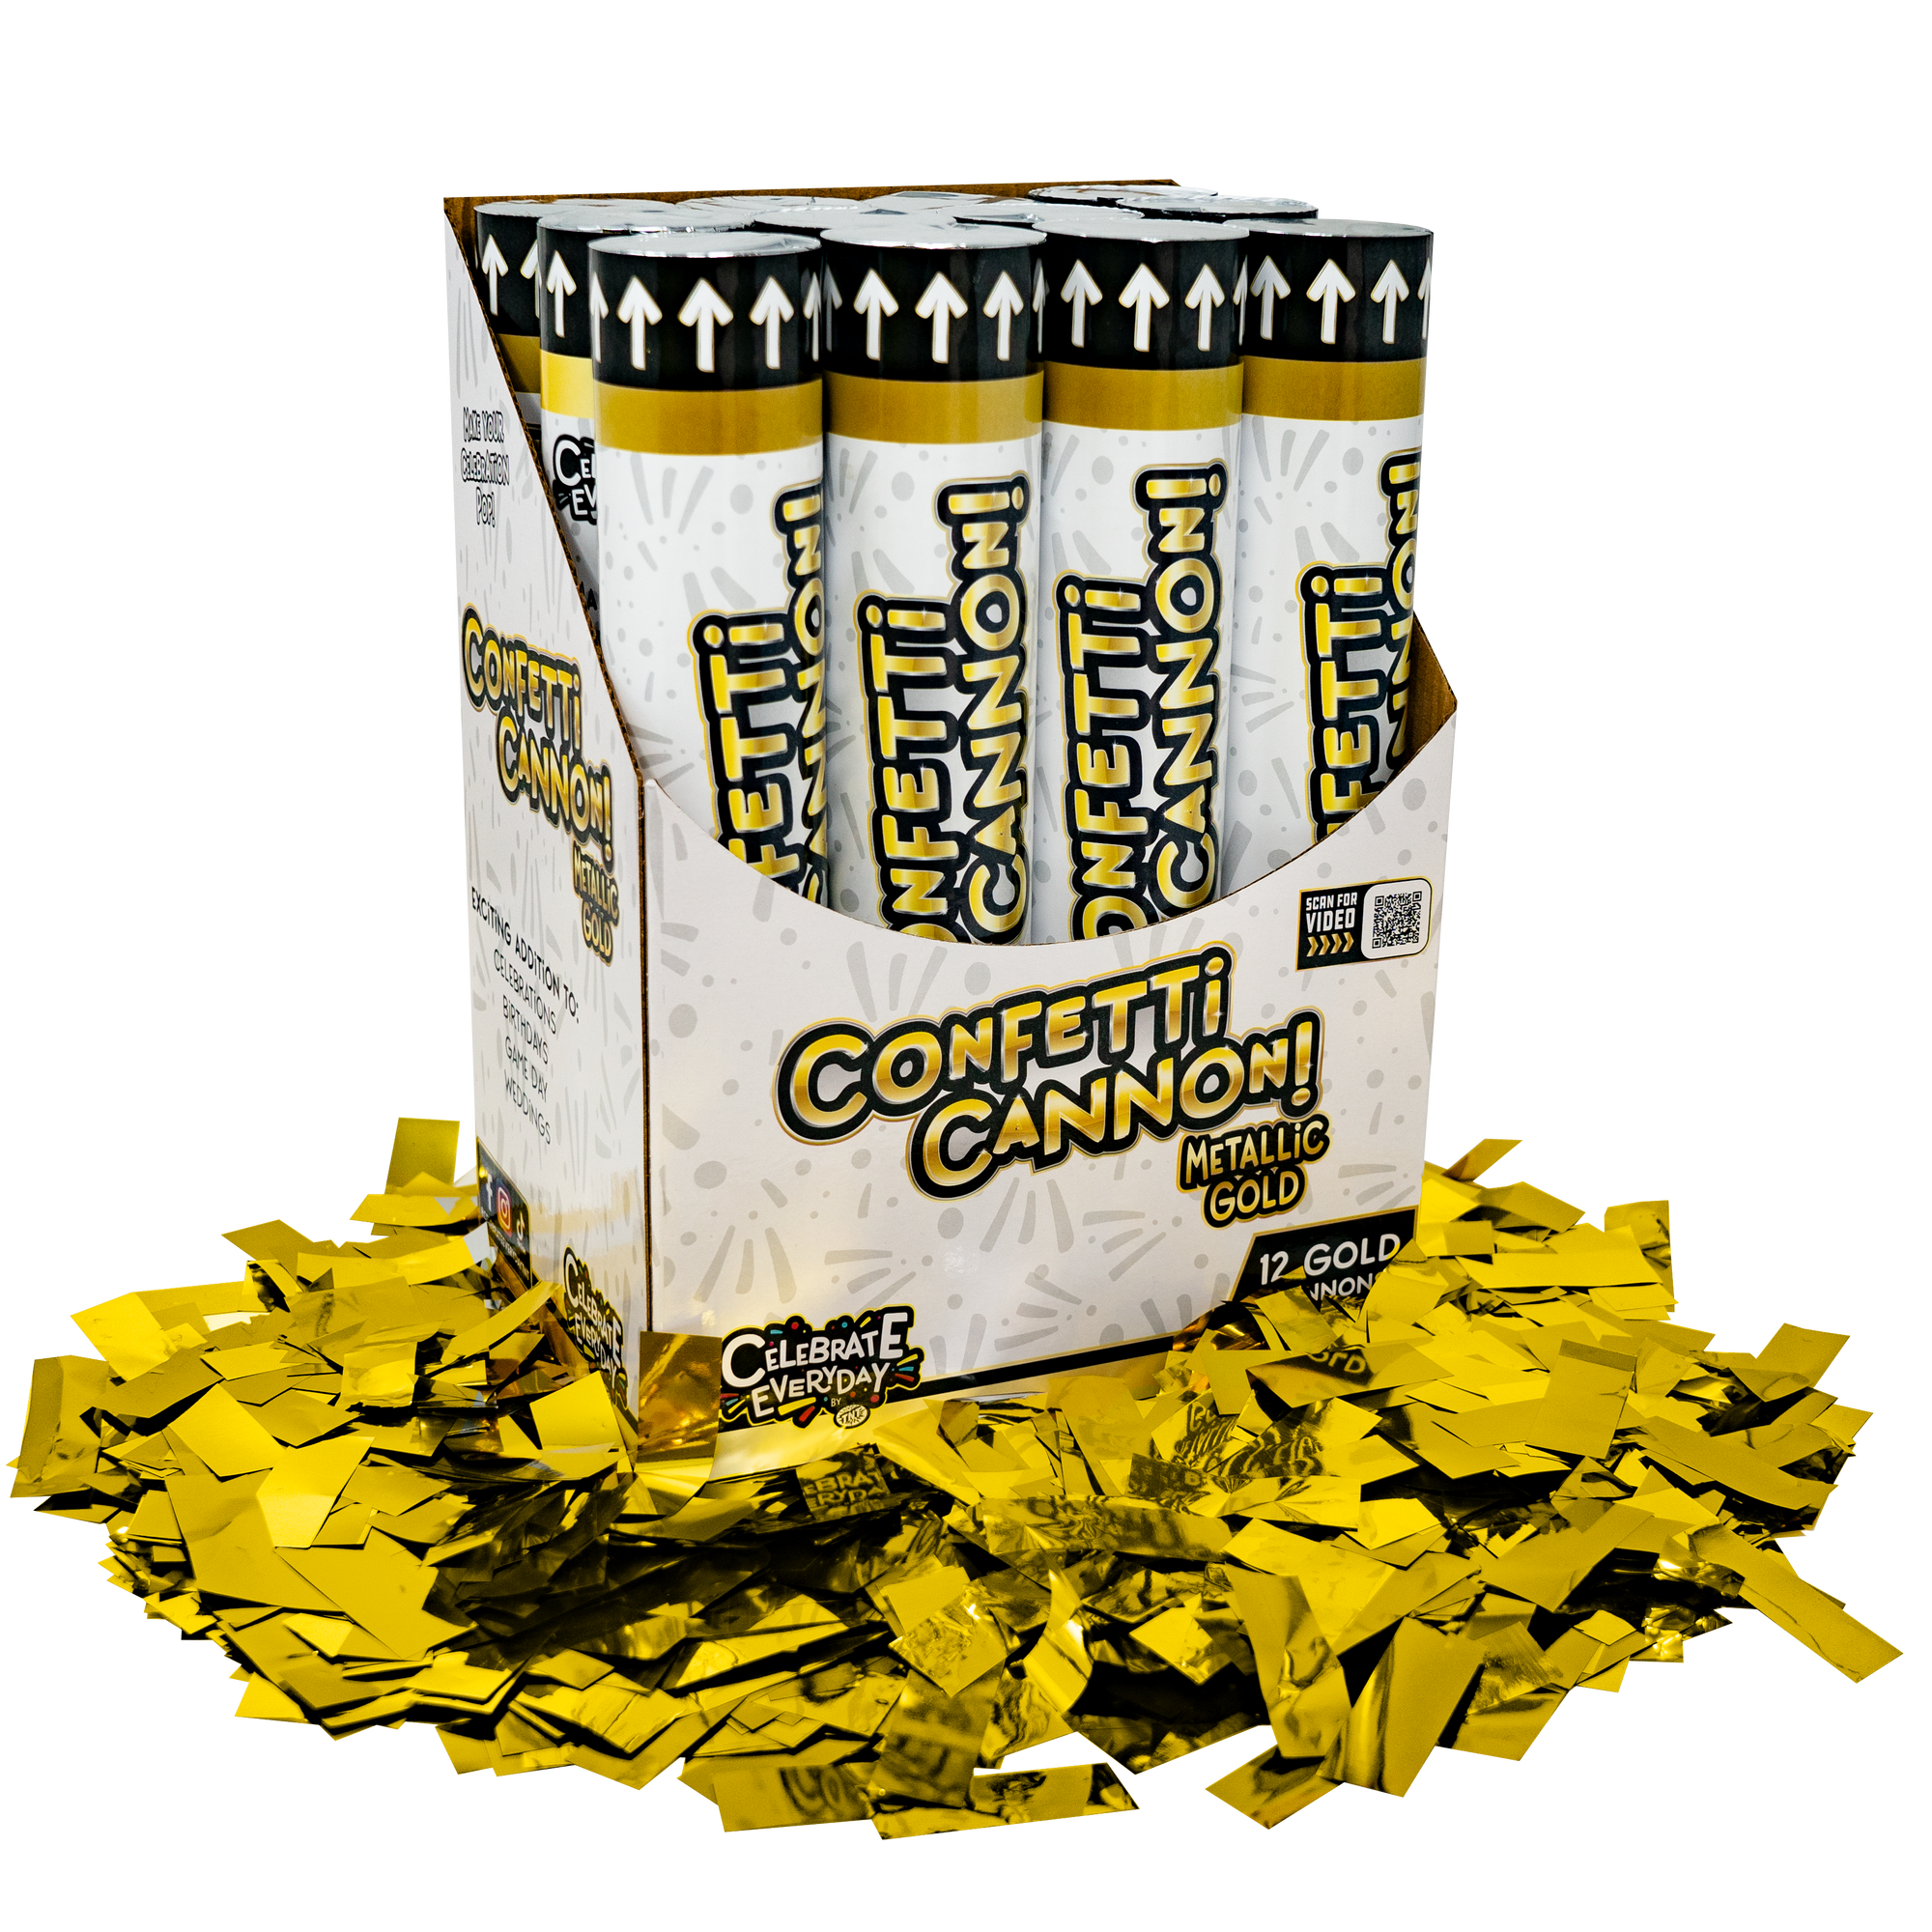 Metallic Gold Confetti Cannon - Celebrate Everyday